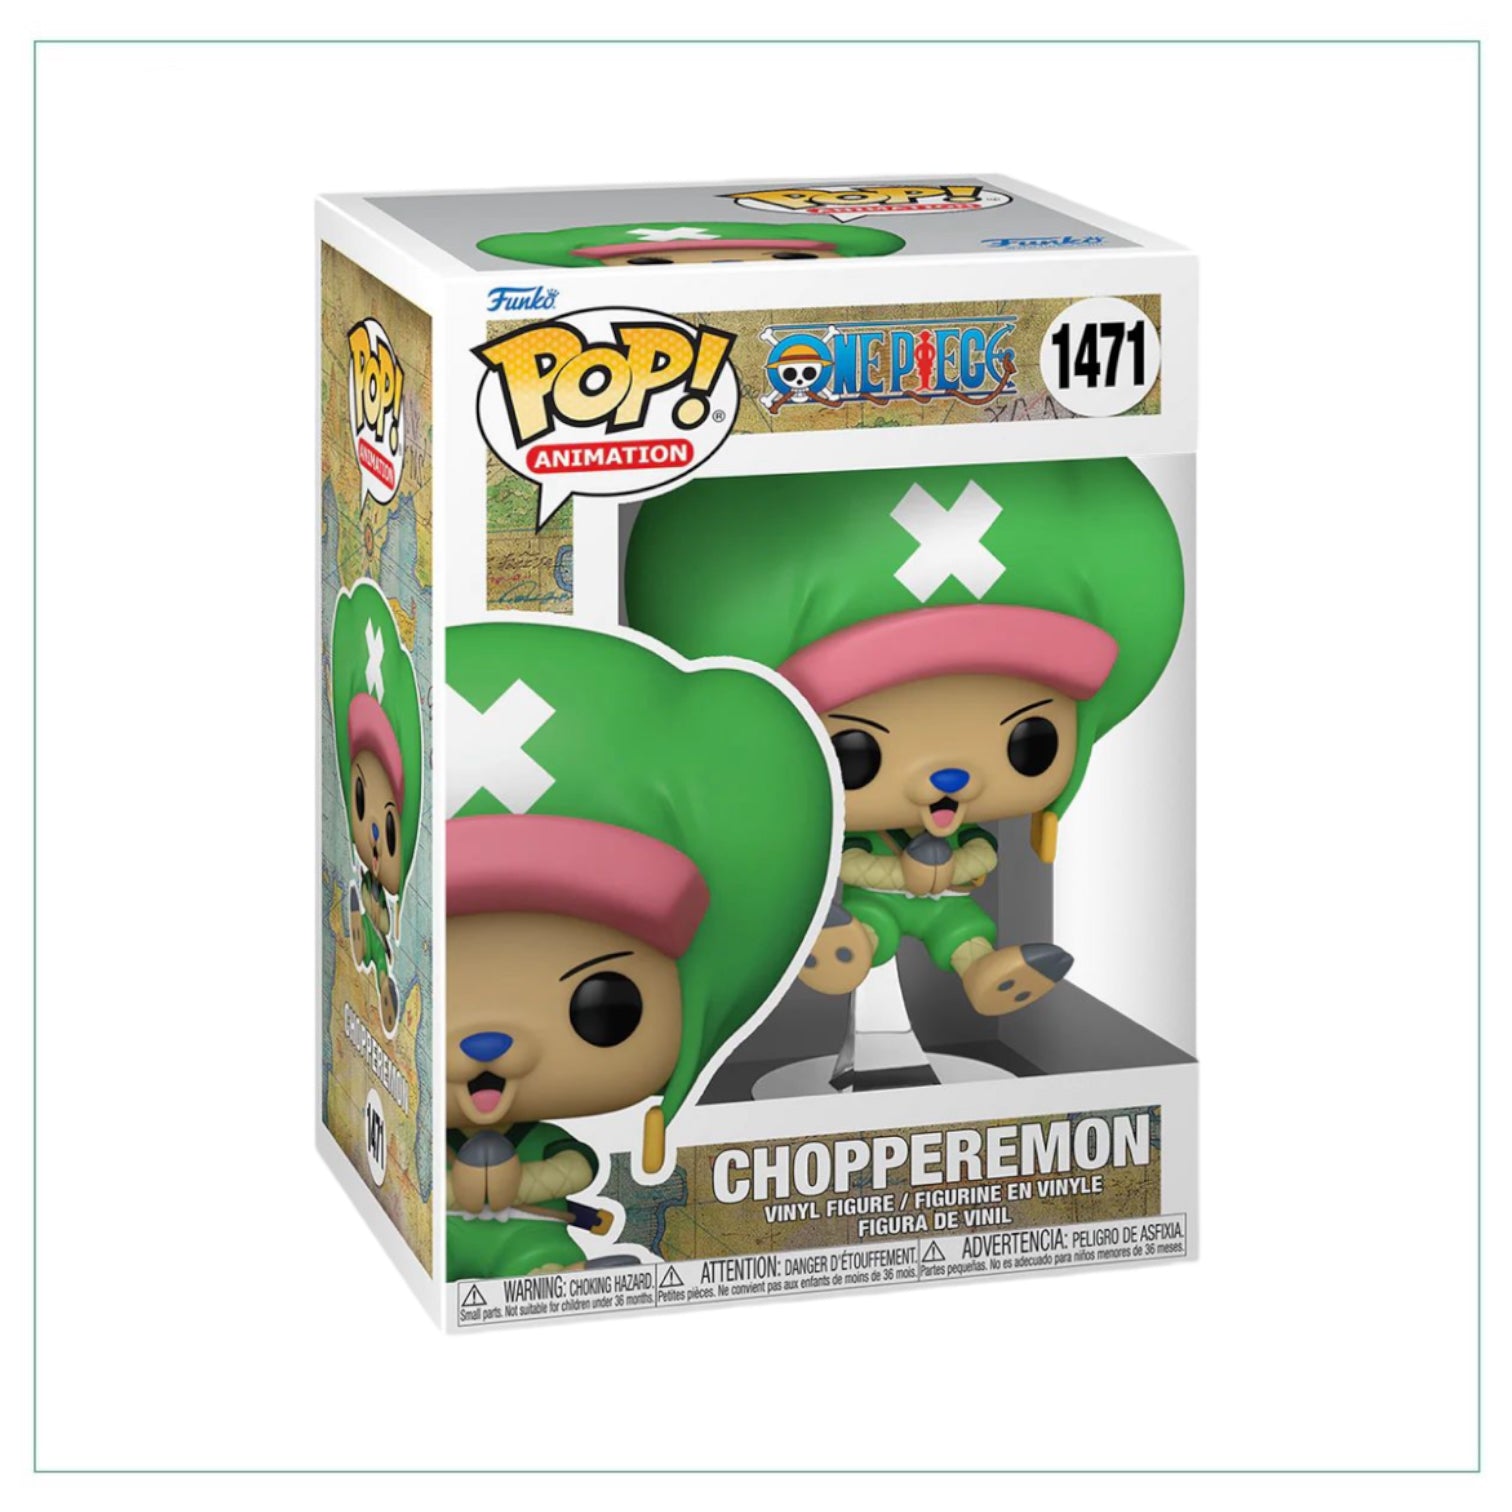 Chopperemon #1471 Funko Pop! One Piece